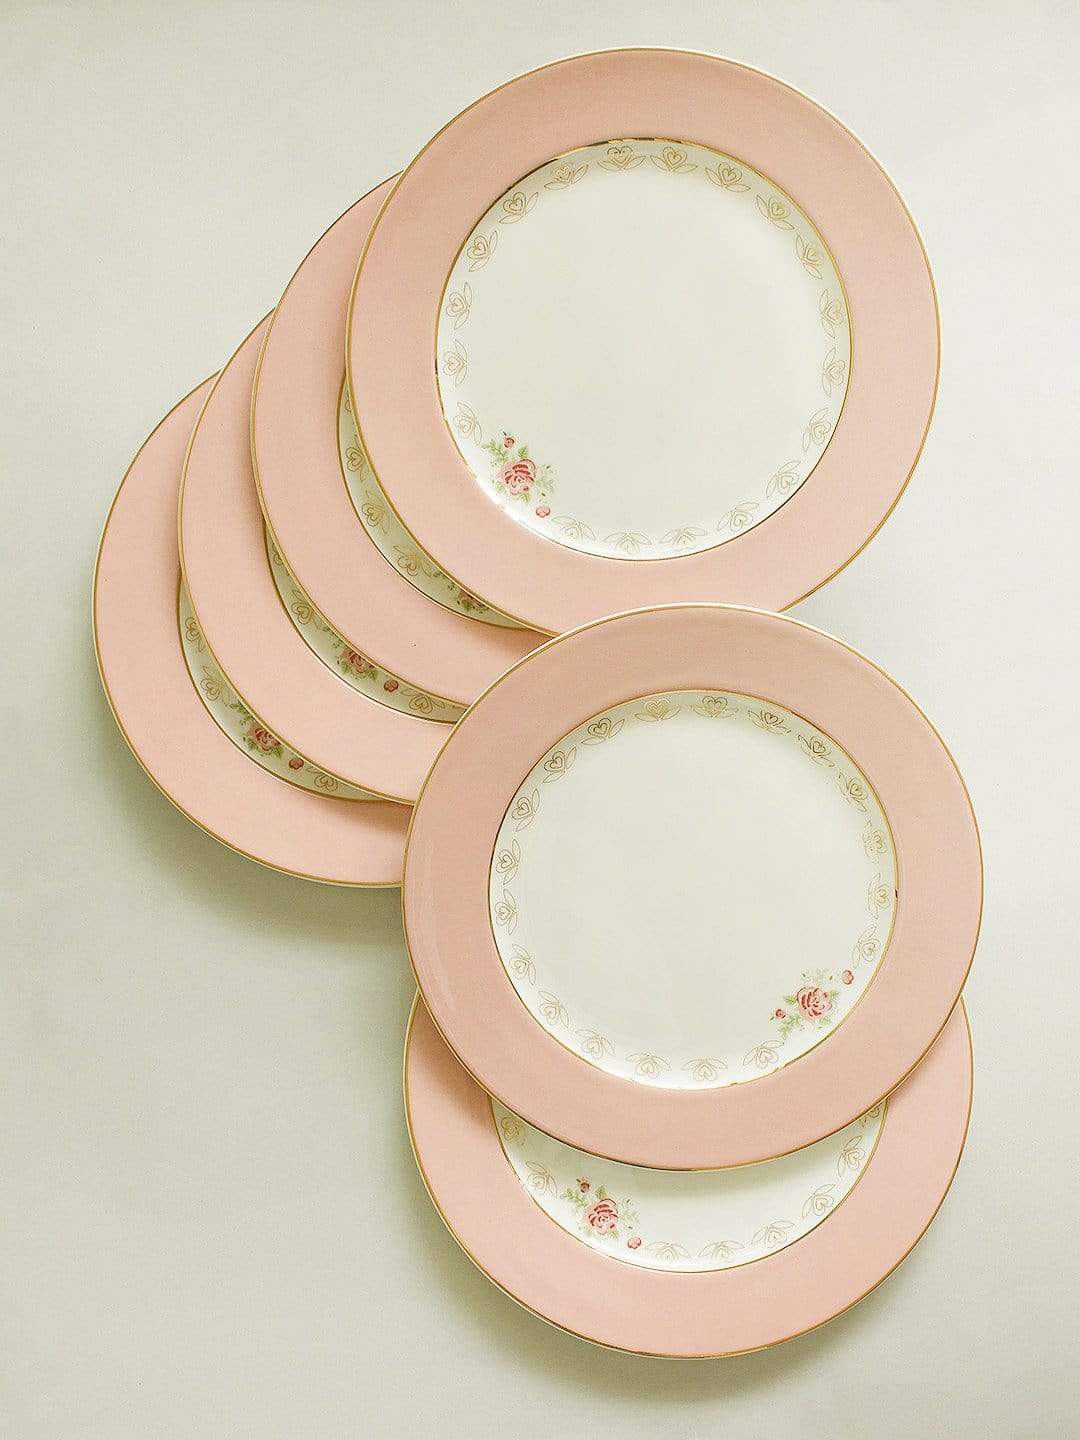 Vintage Rose Dinner Plates Set of 6 - Coral